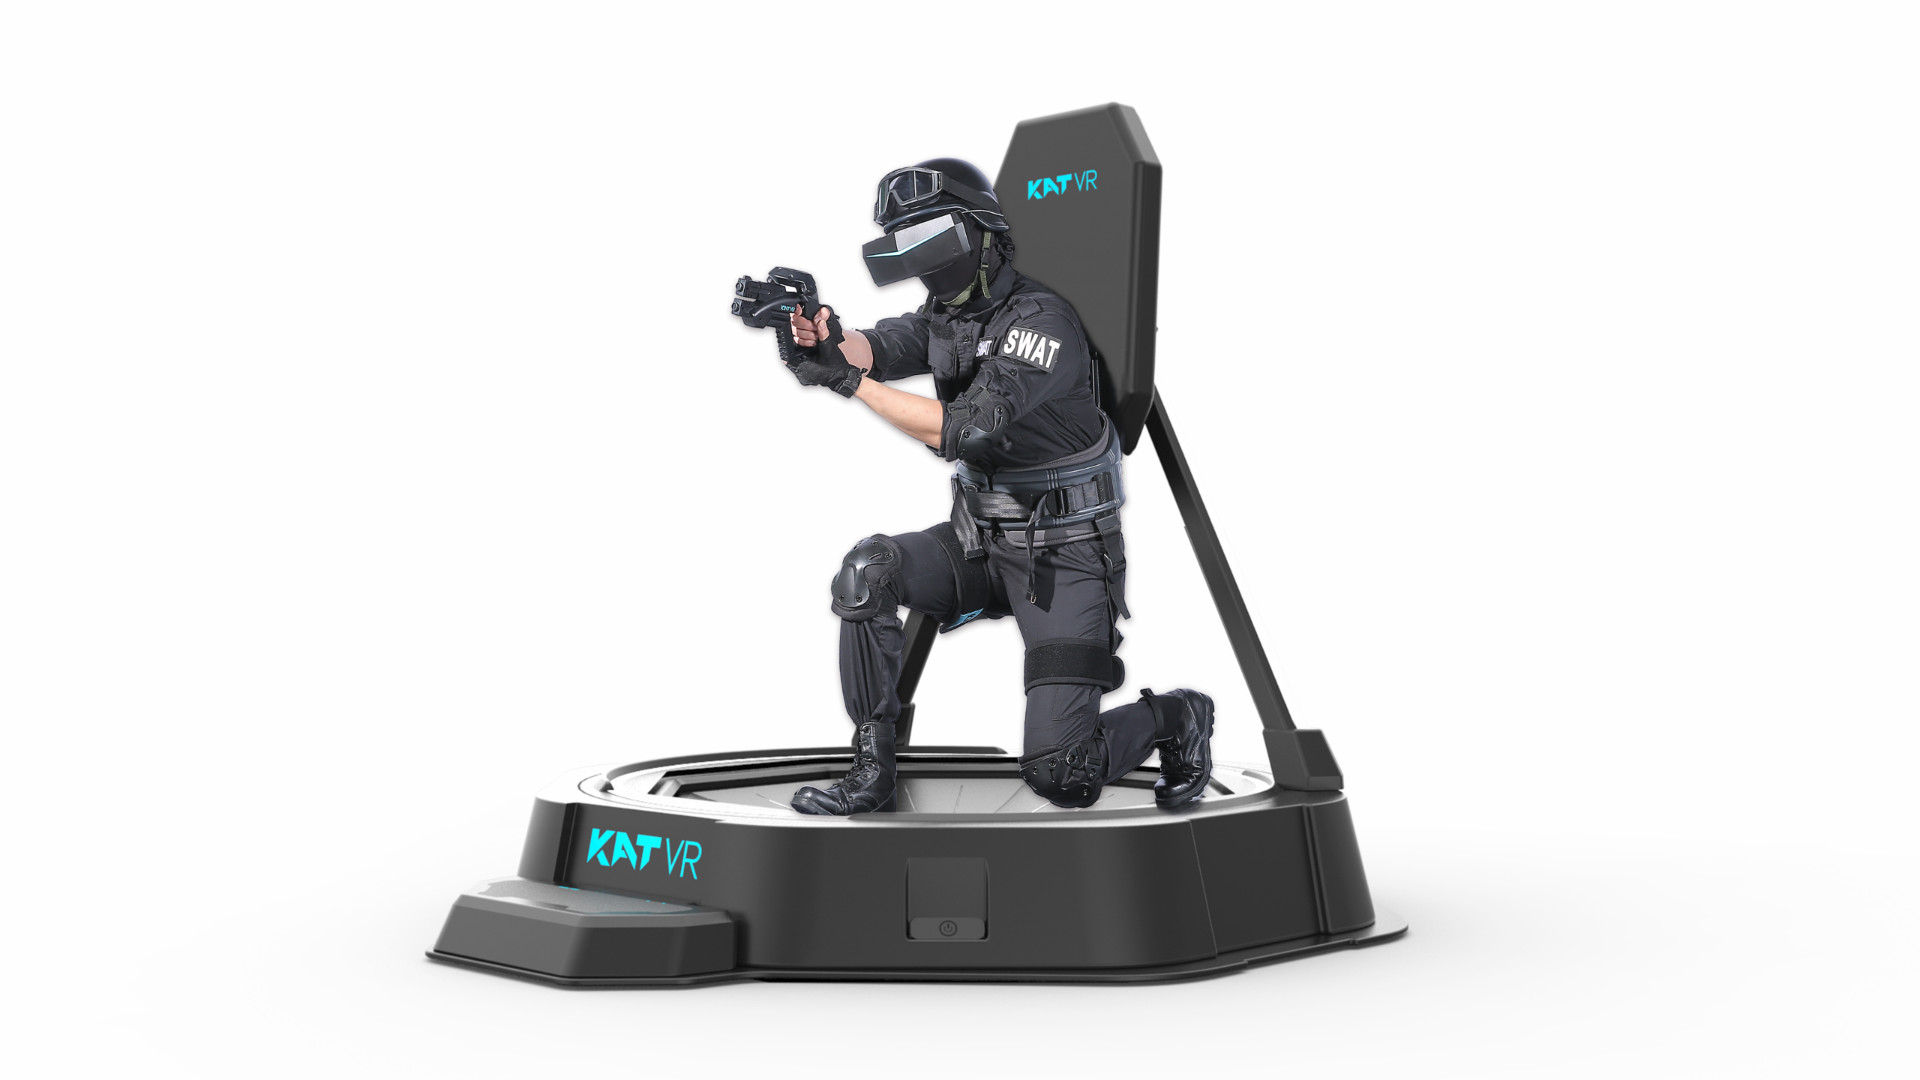 Update: KatVR Scraps 'Mini' VR Treadmill Kickstarter, Sets Price at – Road